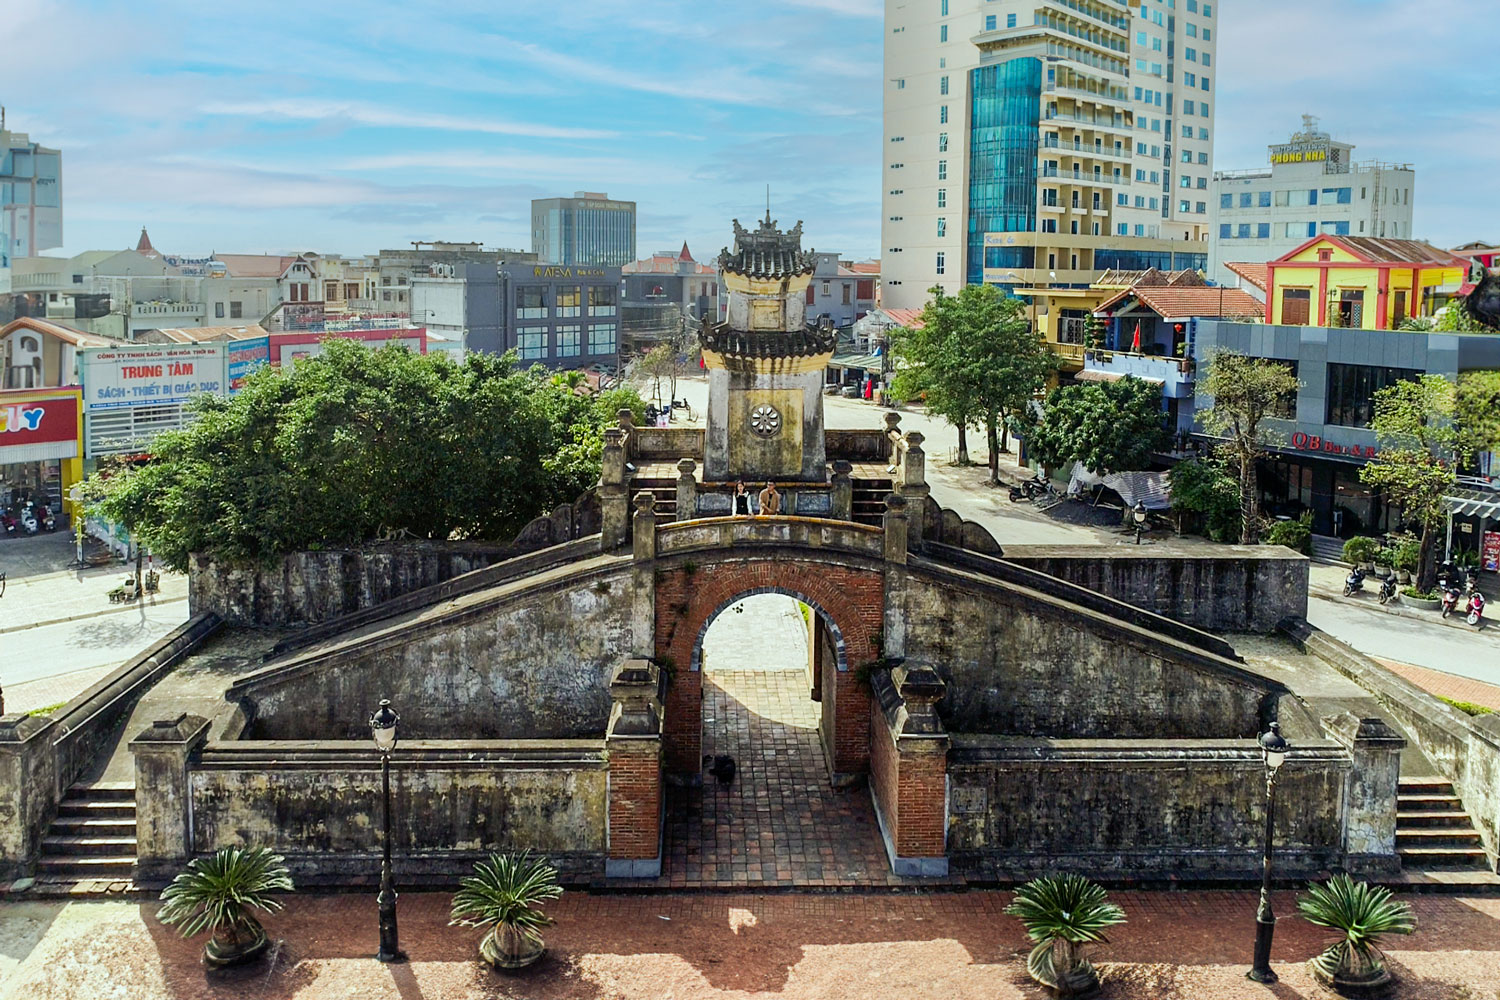 Quảng Bình Quan là di sản kiến trúc quân sự hàng trăm năm tuổi, chứng nhân lịch sử hào hùng của dân tộc.